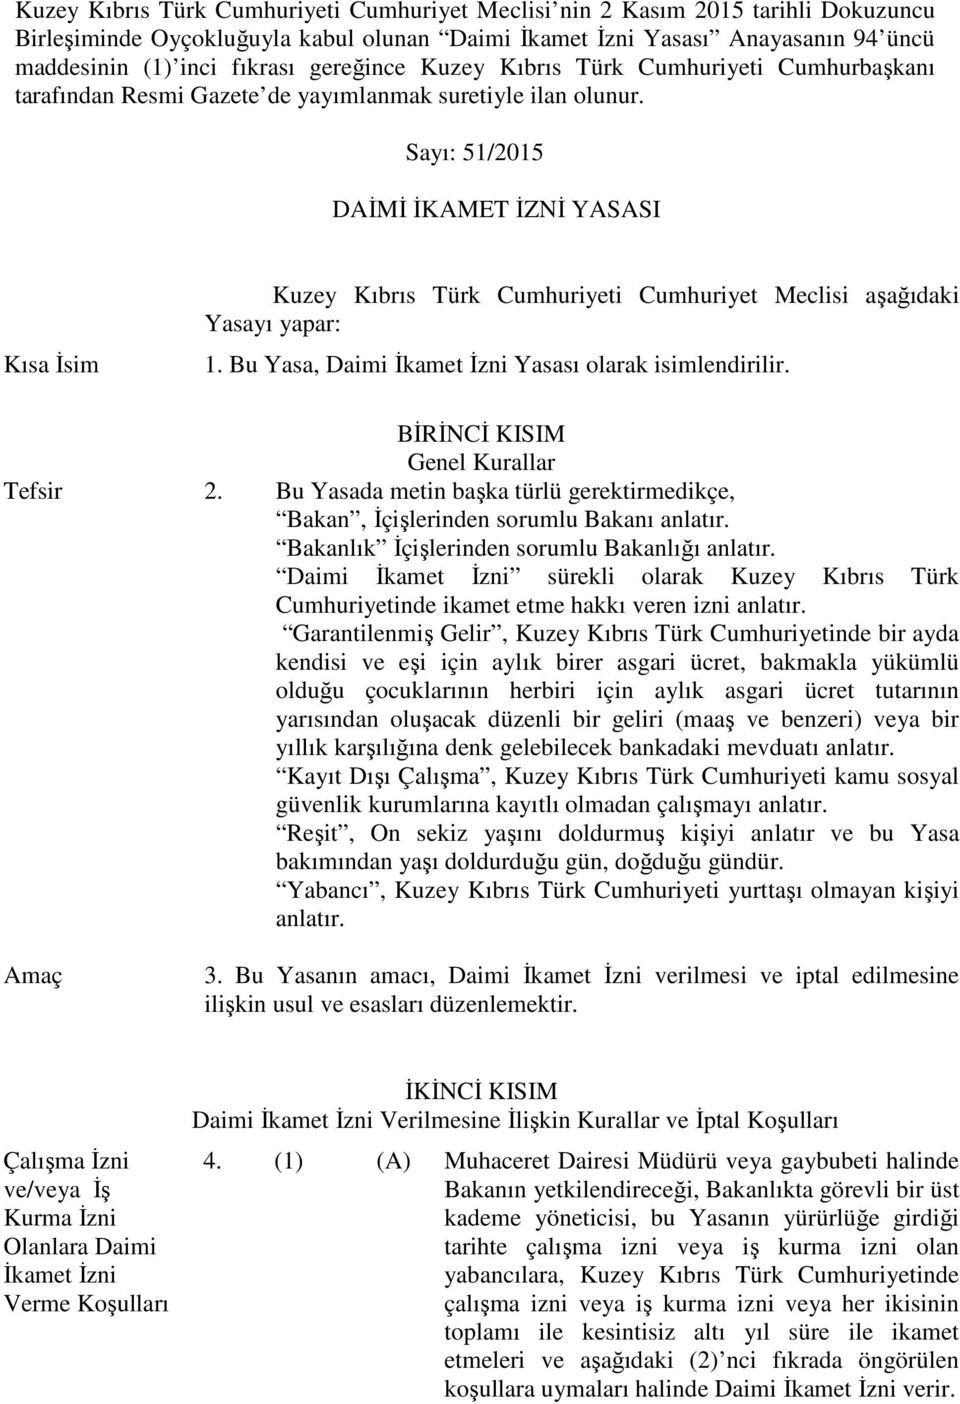 Sayı: 51/2015 DAİMİ İKAMET İZNİ YASASI Kısa İsim Kuzey Kıbrıs Türk Cumhuriyeti Cumhuriyet Meclisi aşağıdaki Yasayı yapar: 1. Bu Yasa, Daimi İkamet İzni Yasası olarak isimlendirilir.